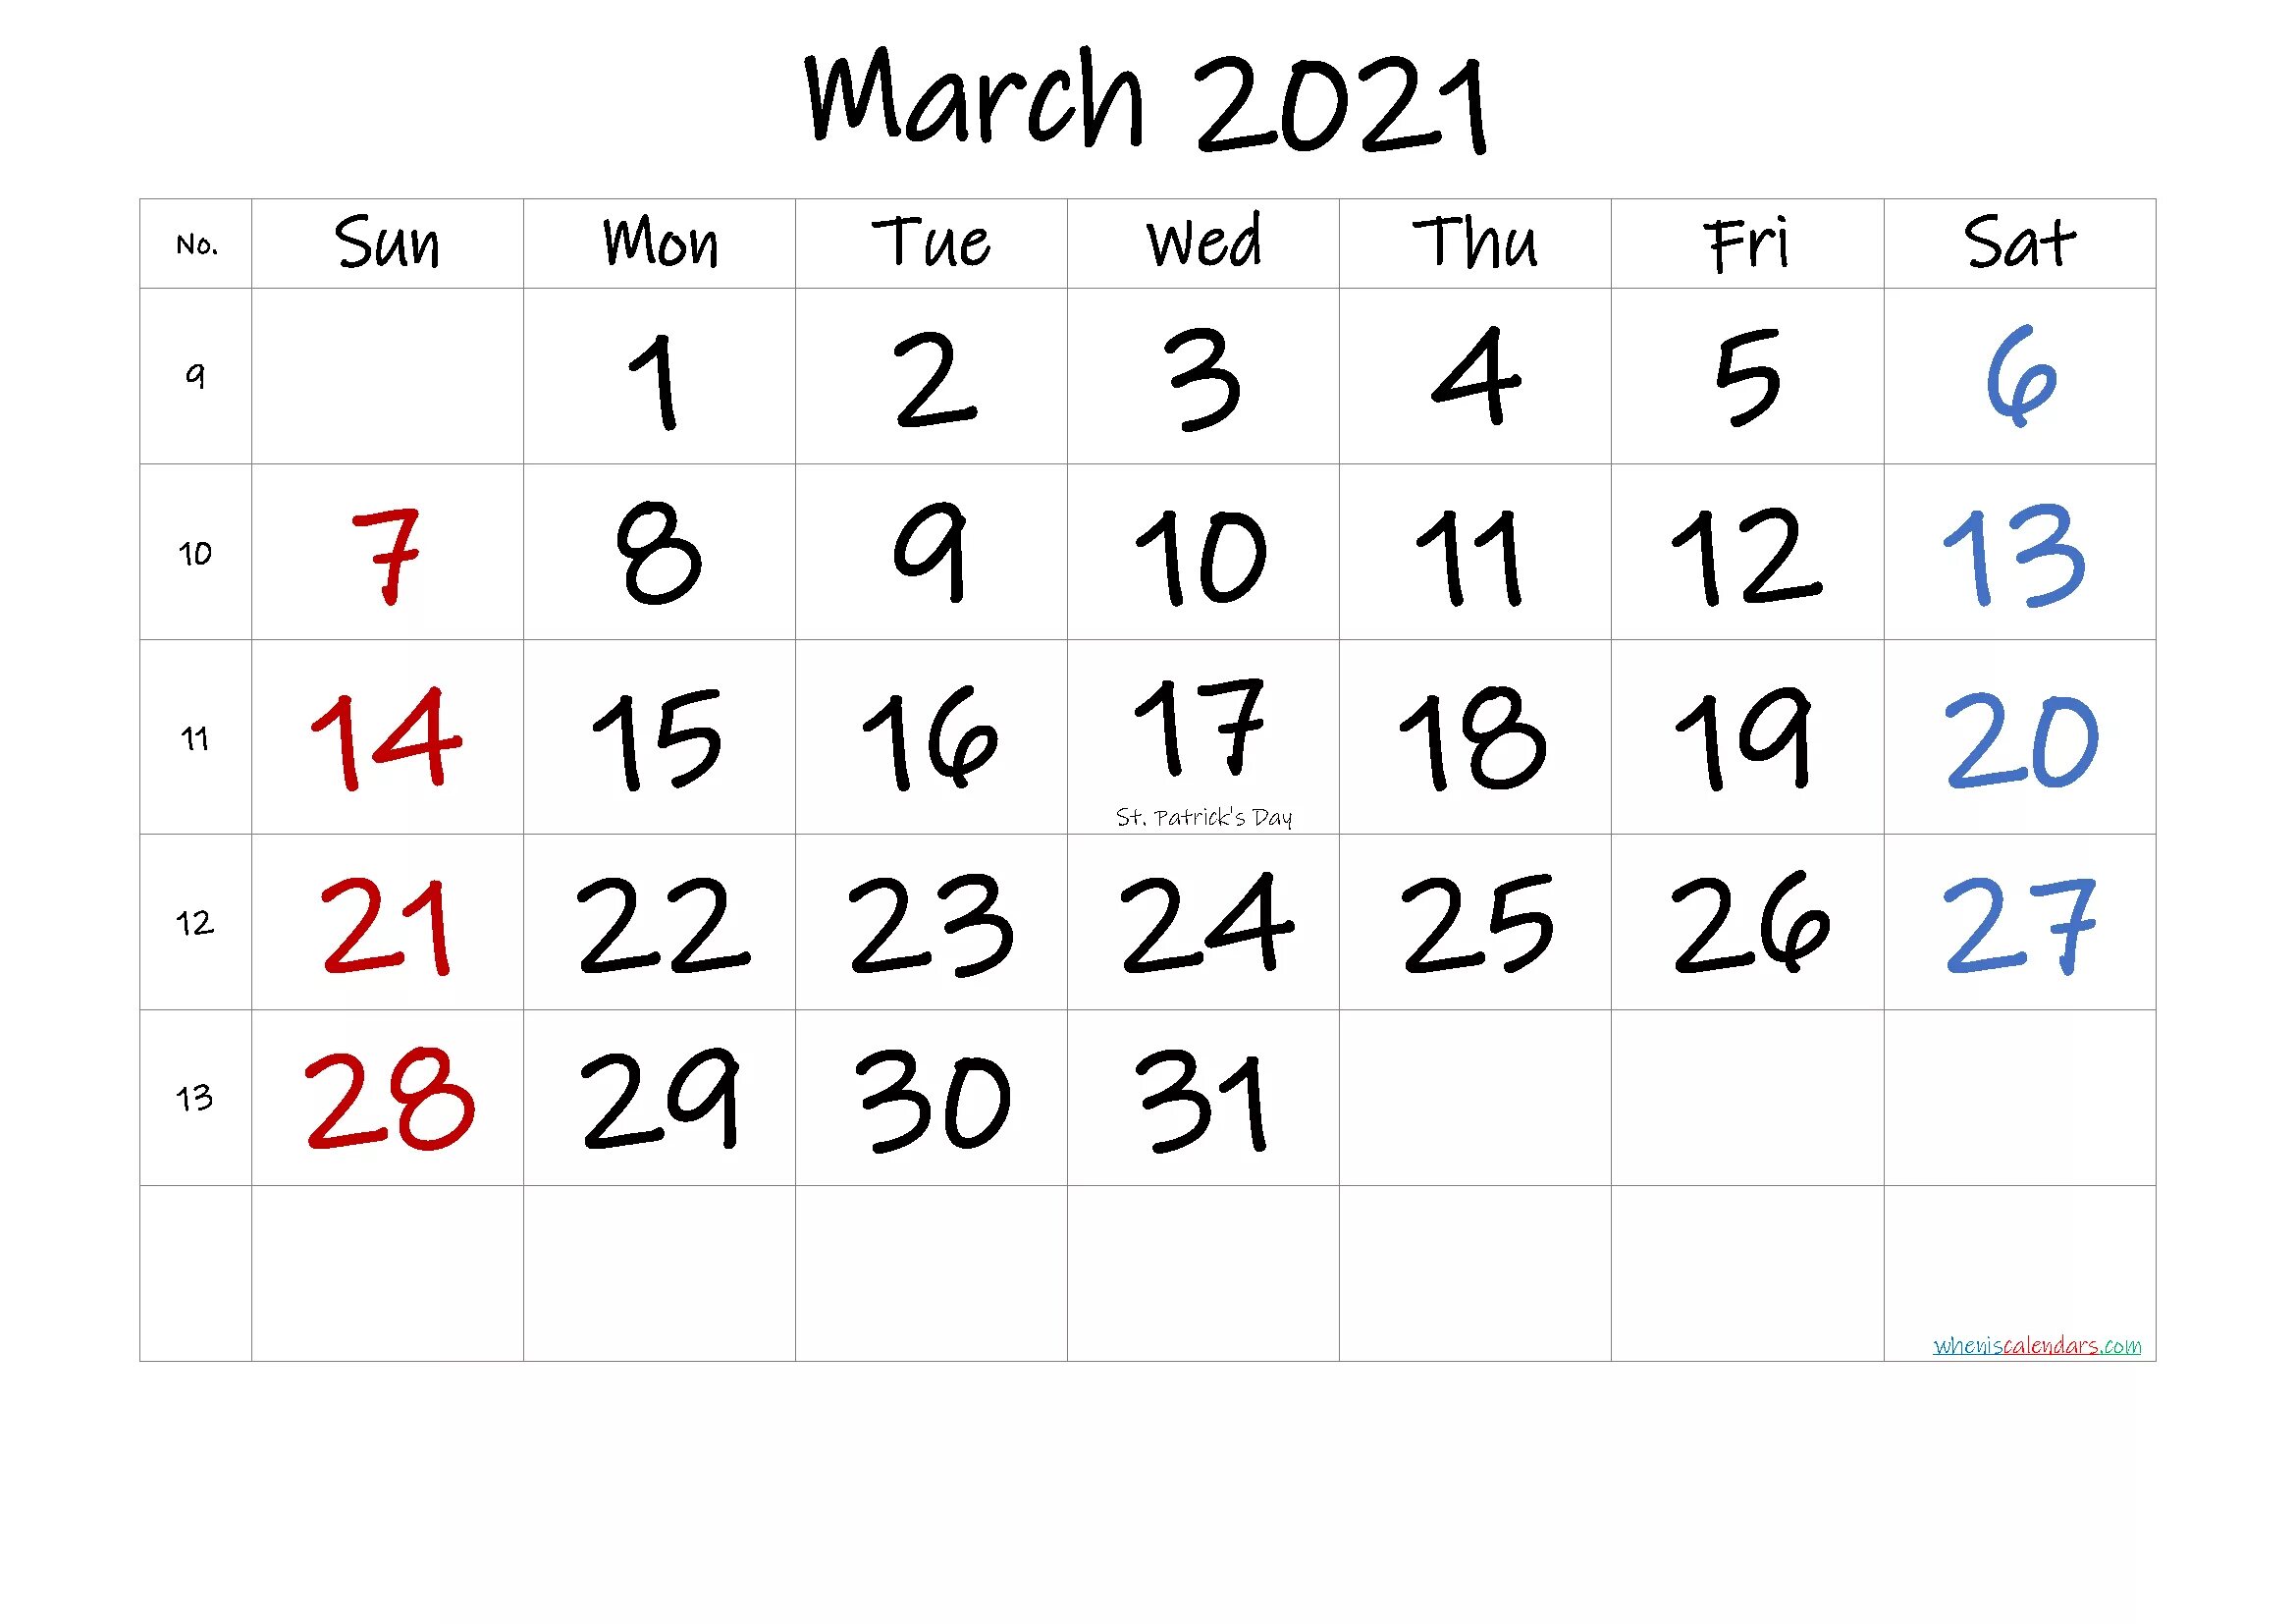 Календарь на март 25 года. August 2022. Календарь август 2022. Calendar August 2022. Март 2021 календарь.